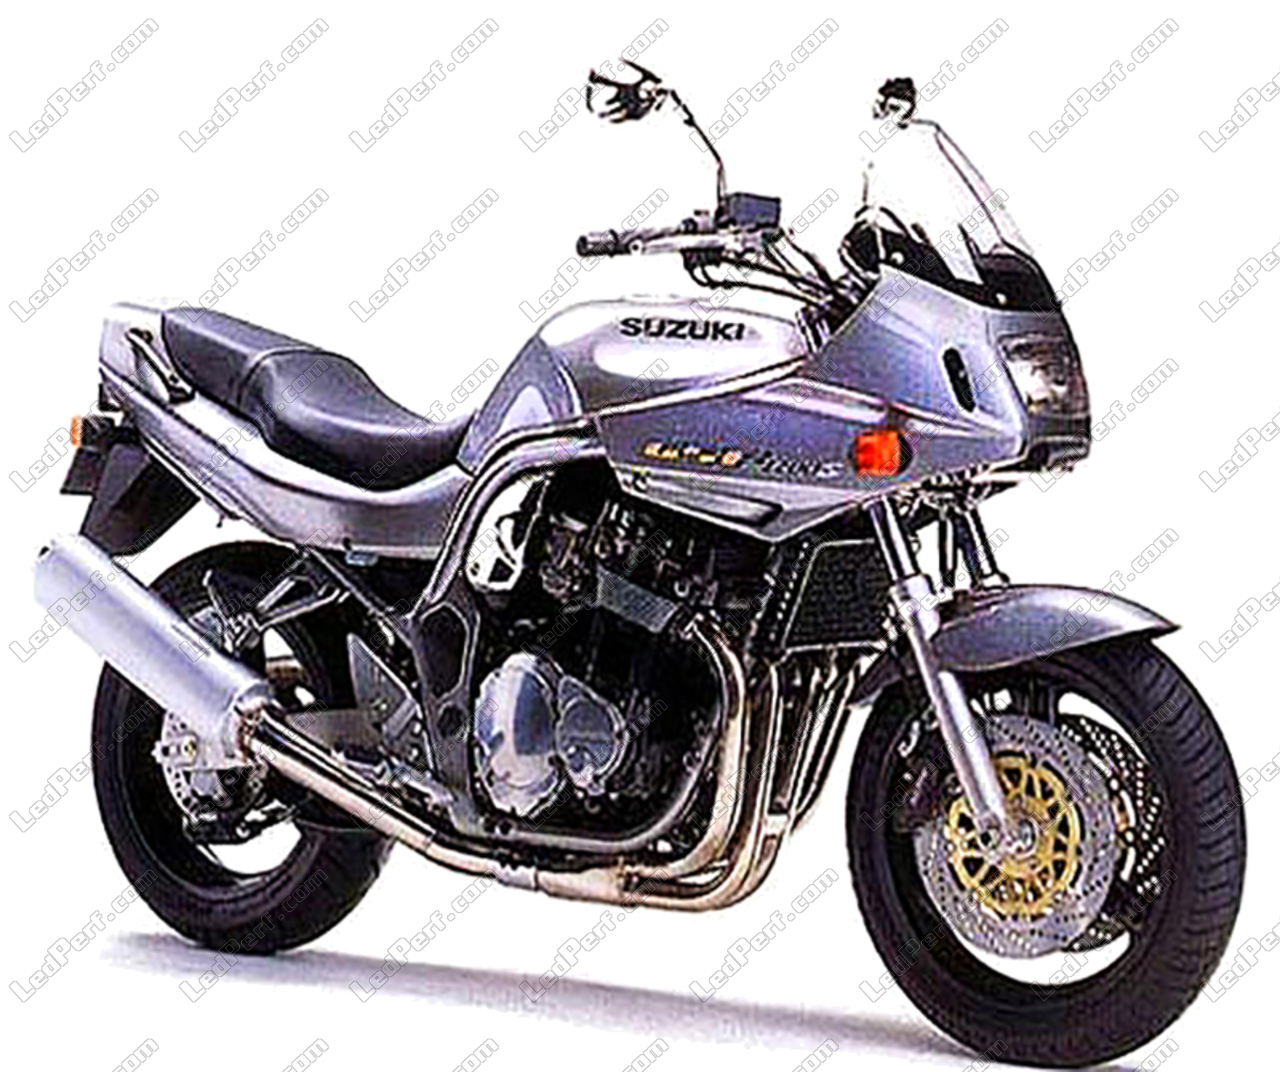 https://www.ledperf.us/images/models/ledperf.com/._1/led-bulb-kit-for-suzuki-bandit-600-s-1995-1999-motorcycle_52104.jpg